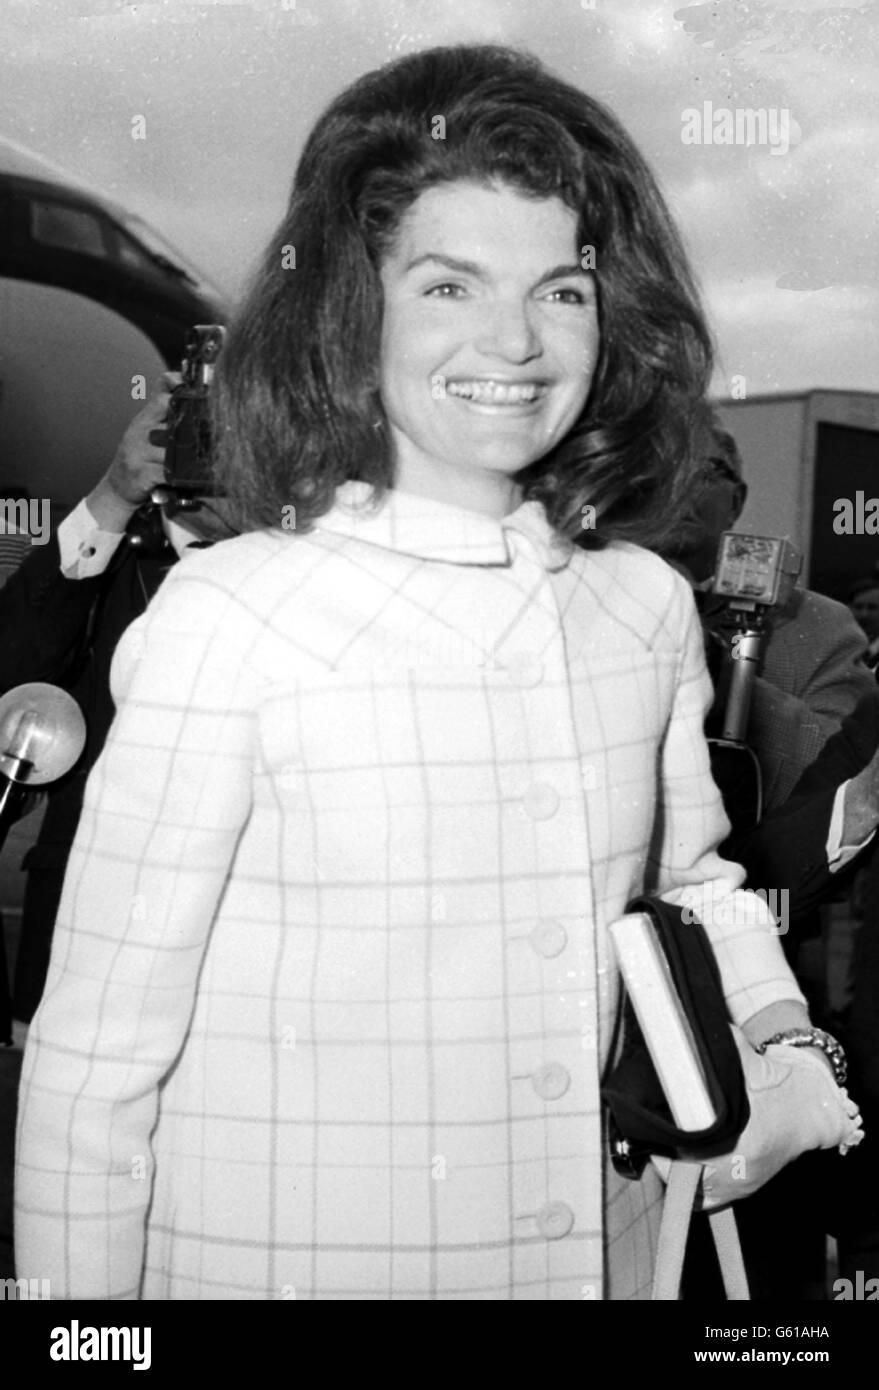 La onorevole Jacqueline Kennedy sorride. La signora Jacqueline Kennedy sorride quando lascia l'aereo all'arrivo all'aeroporto di Londra dopo la sua visita in spagnolo. Foto Stock